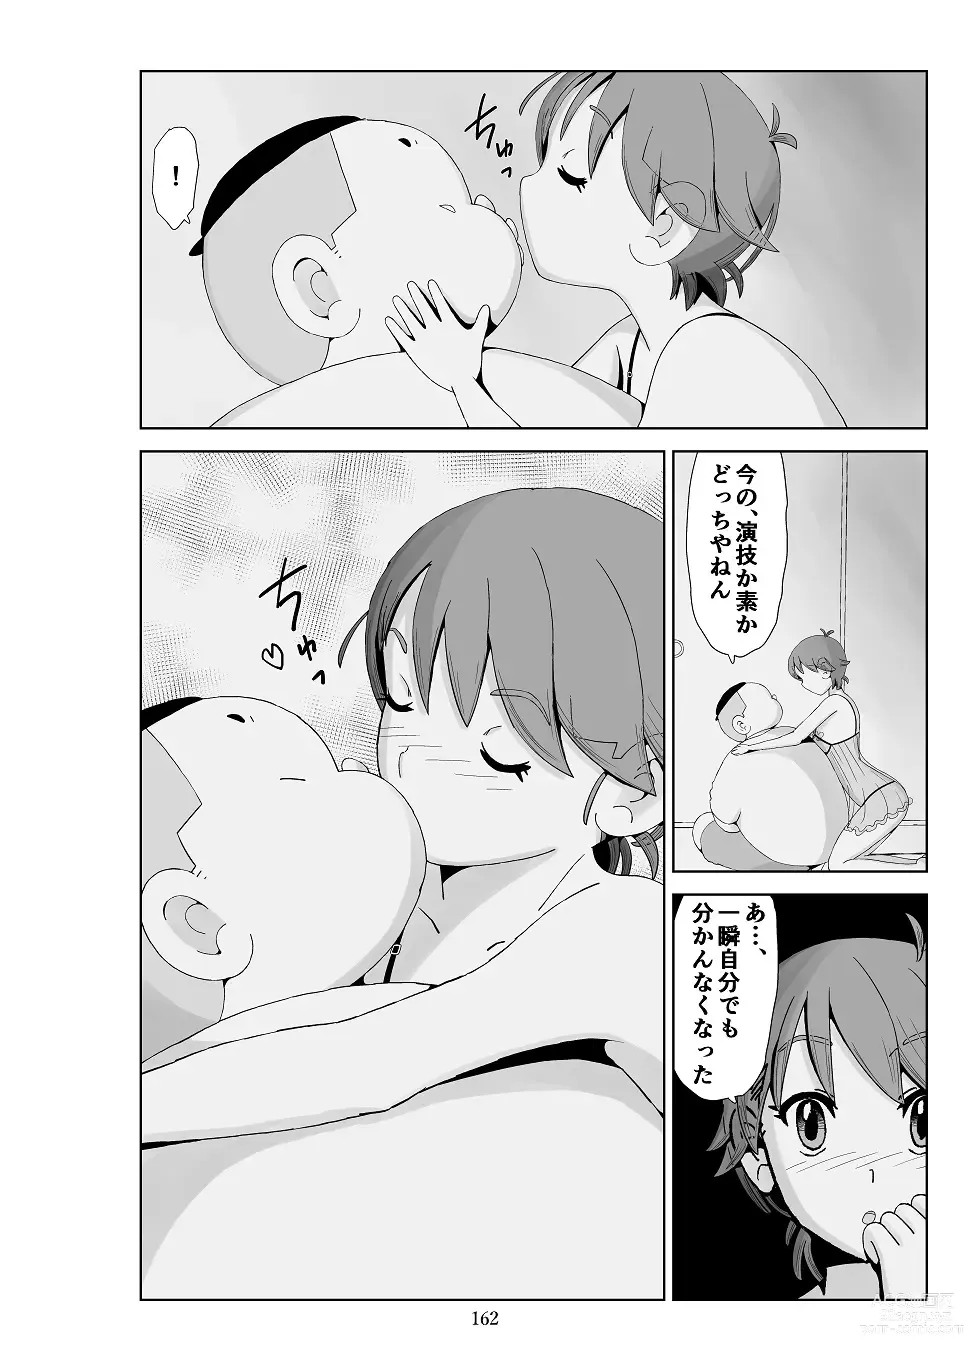 Page 163 of doujinshi Futoshi 3